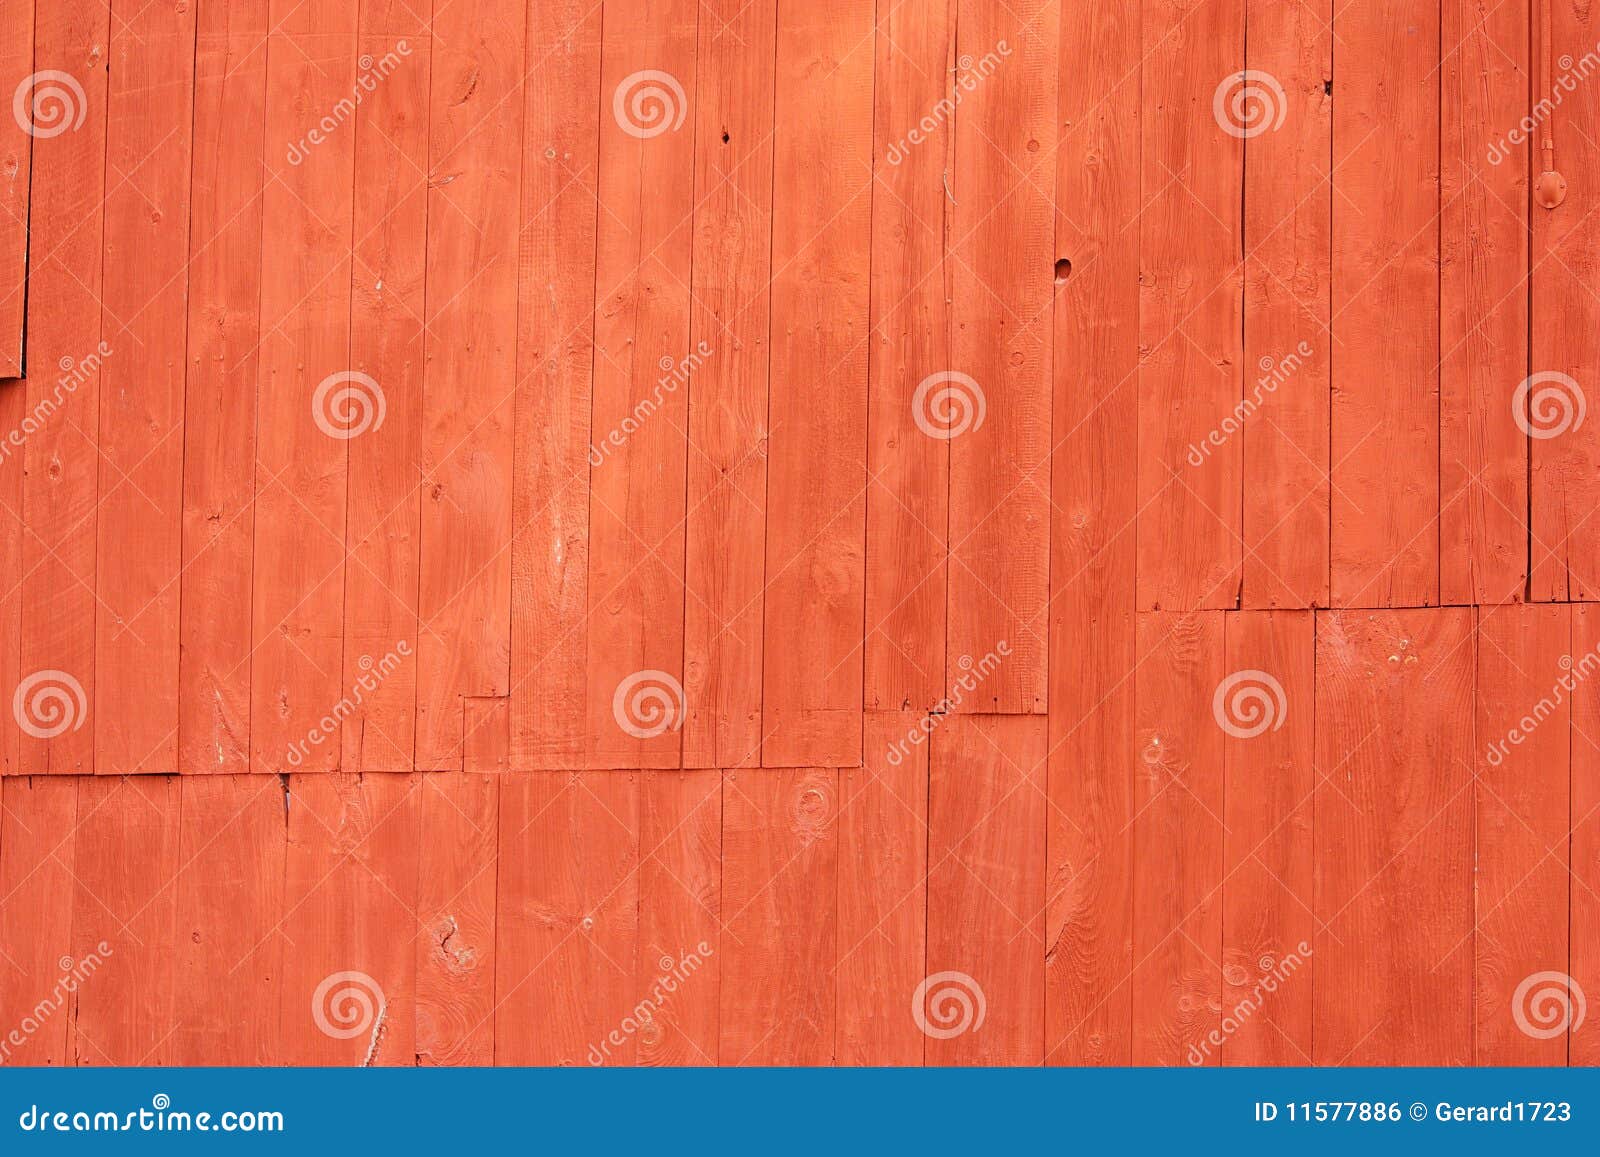 Mur rouge. Mur fait de planches en bois peintes rouges